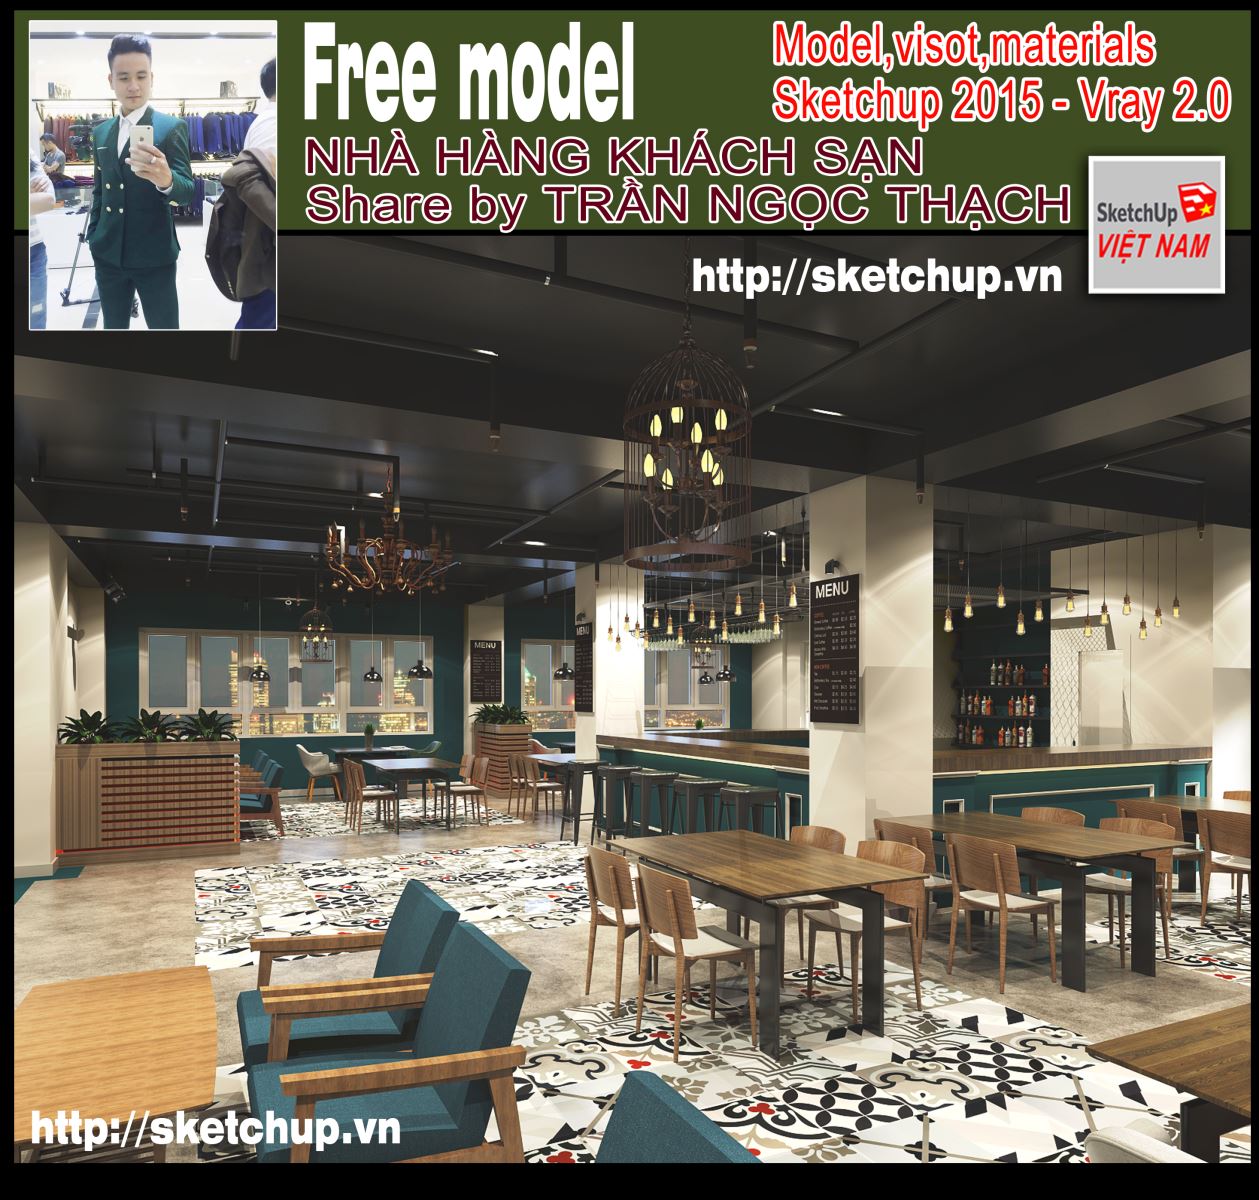 Thumbnail Model nhà hàng khách sạn - Shared by Trần Ngọc Thạch